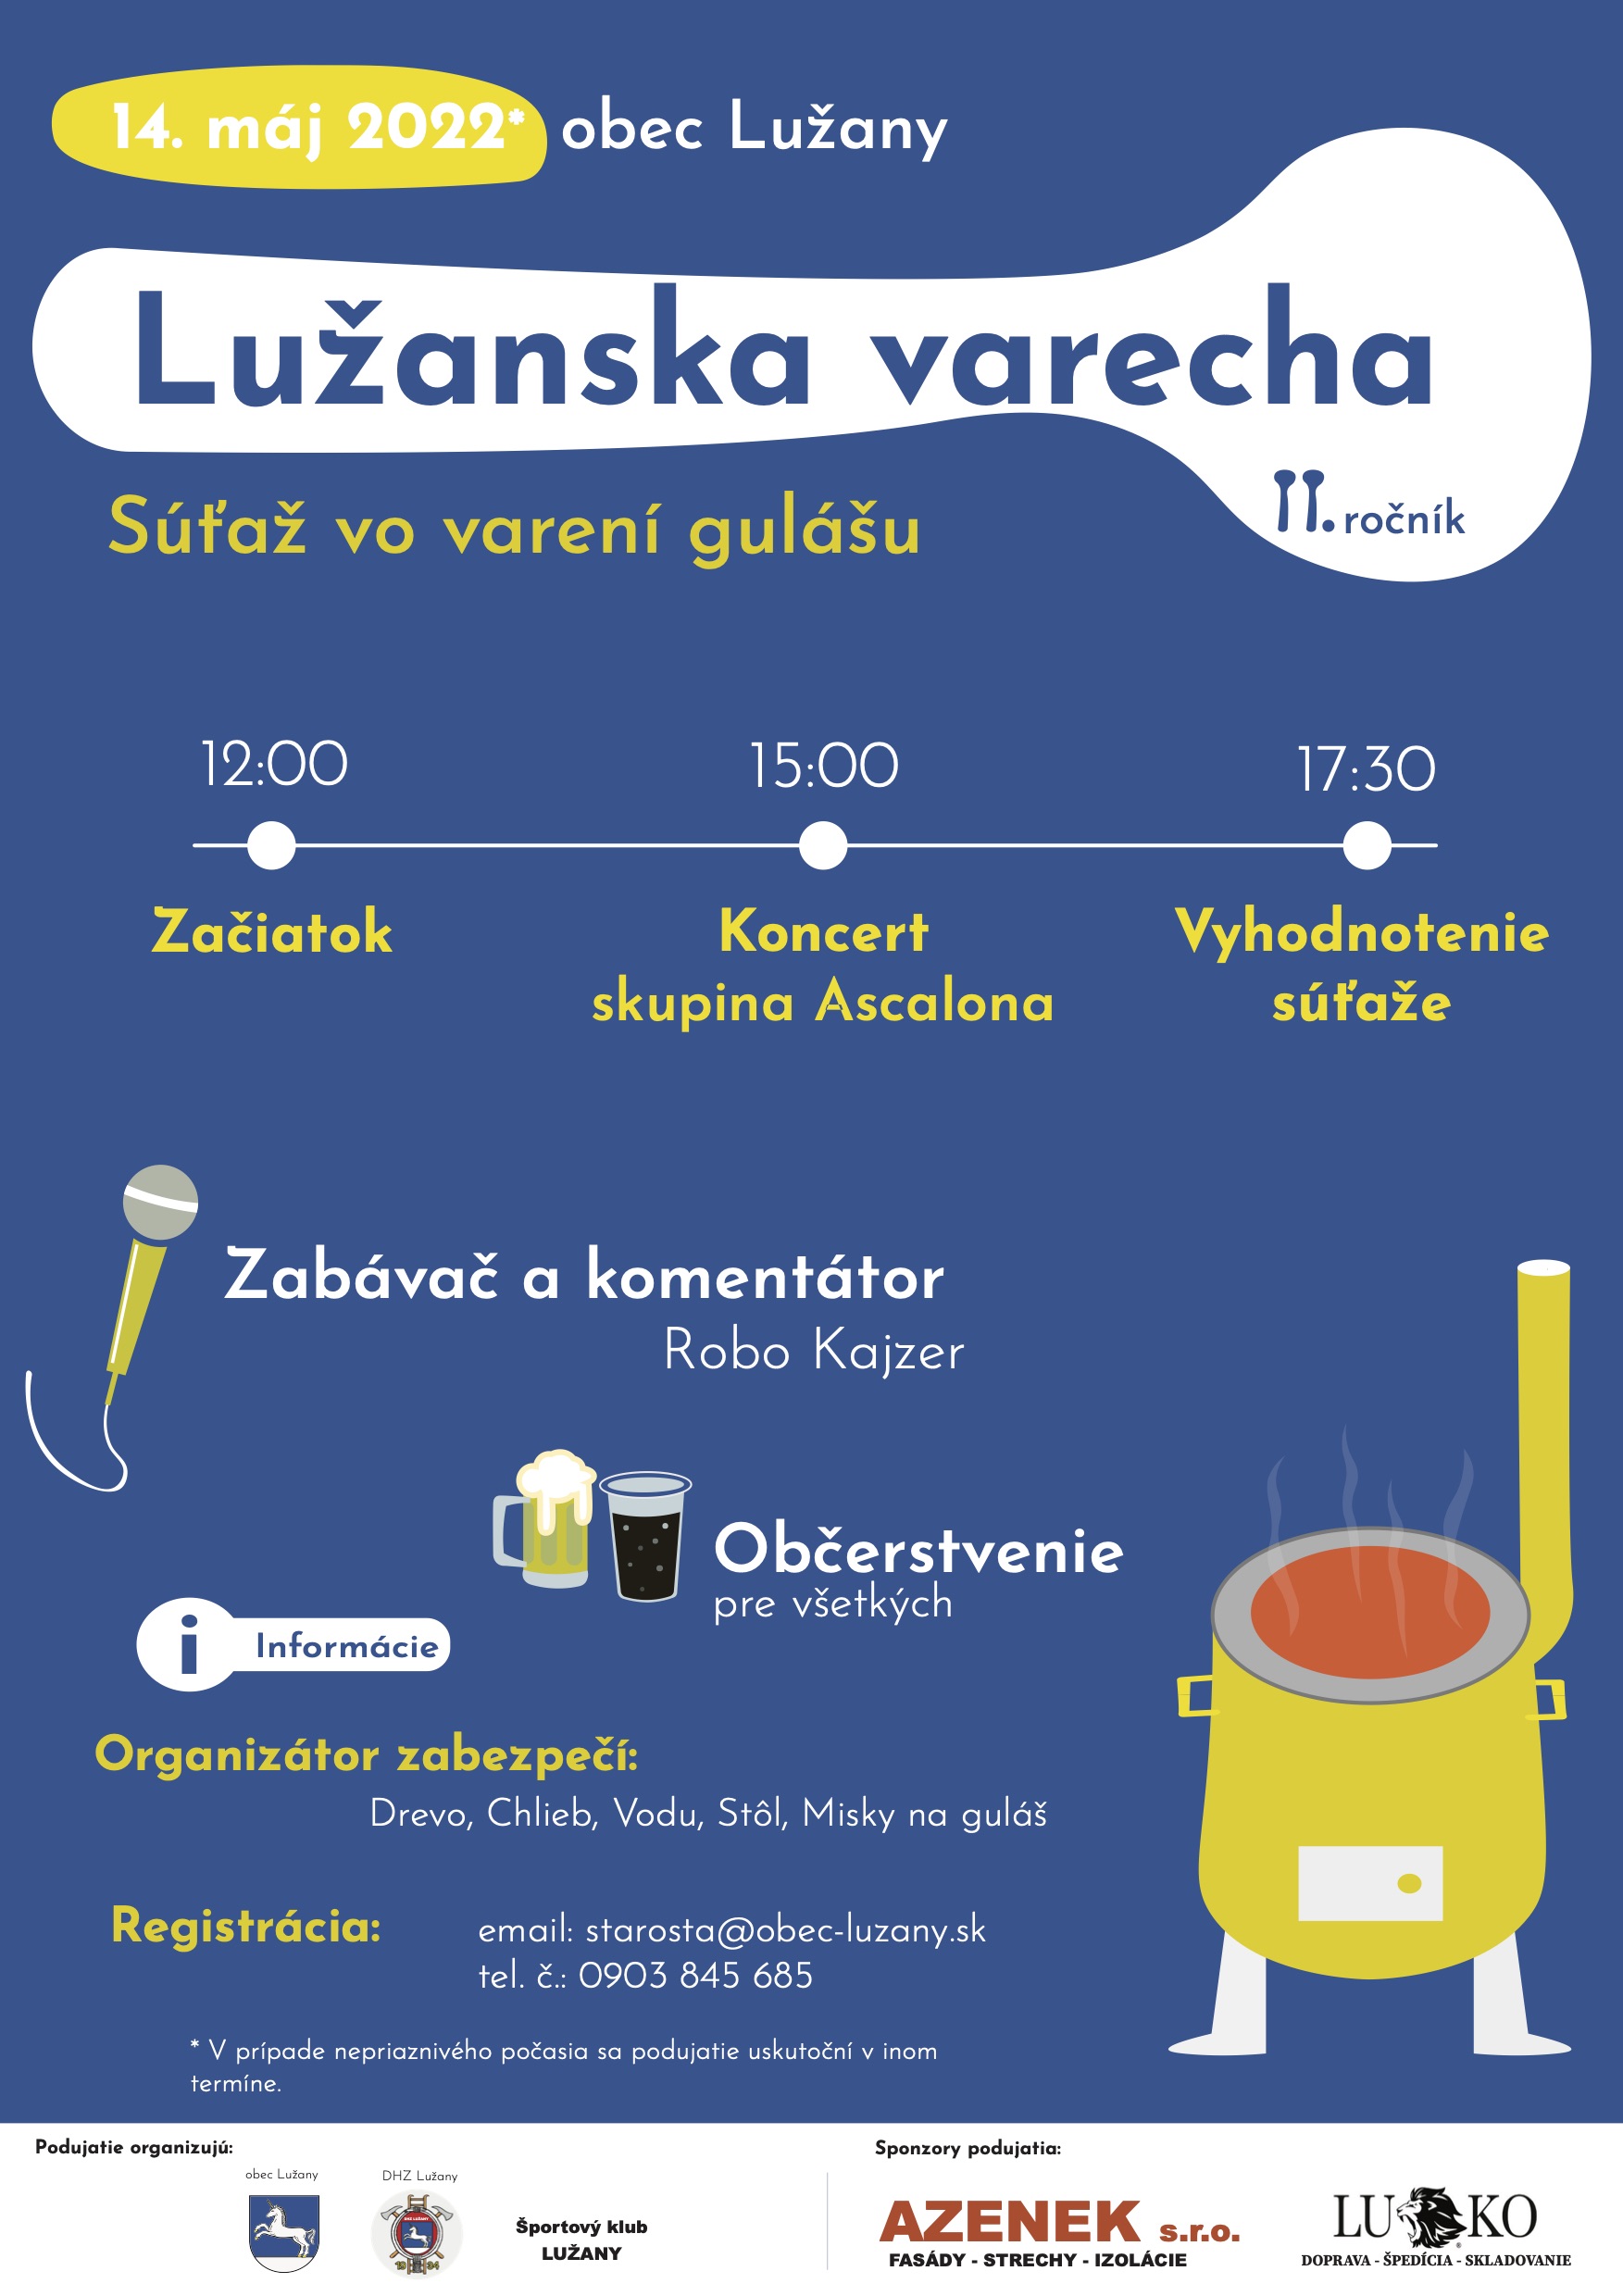 Luzansk varecha 2022 Luany  - sa vo varen gulu 